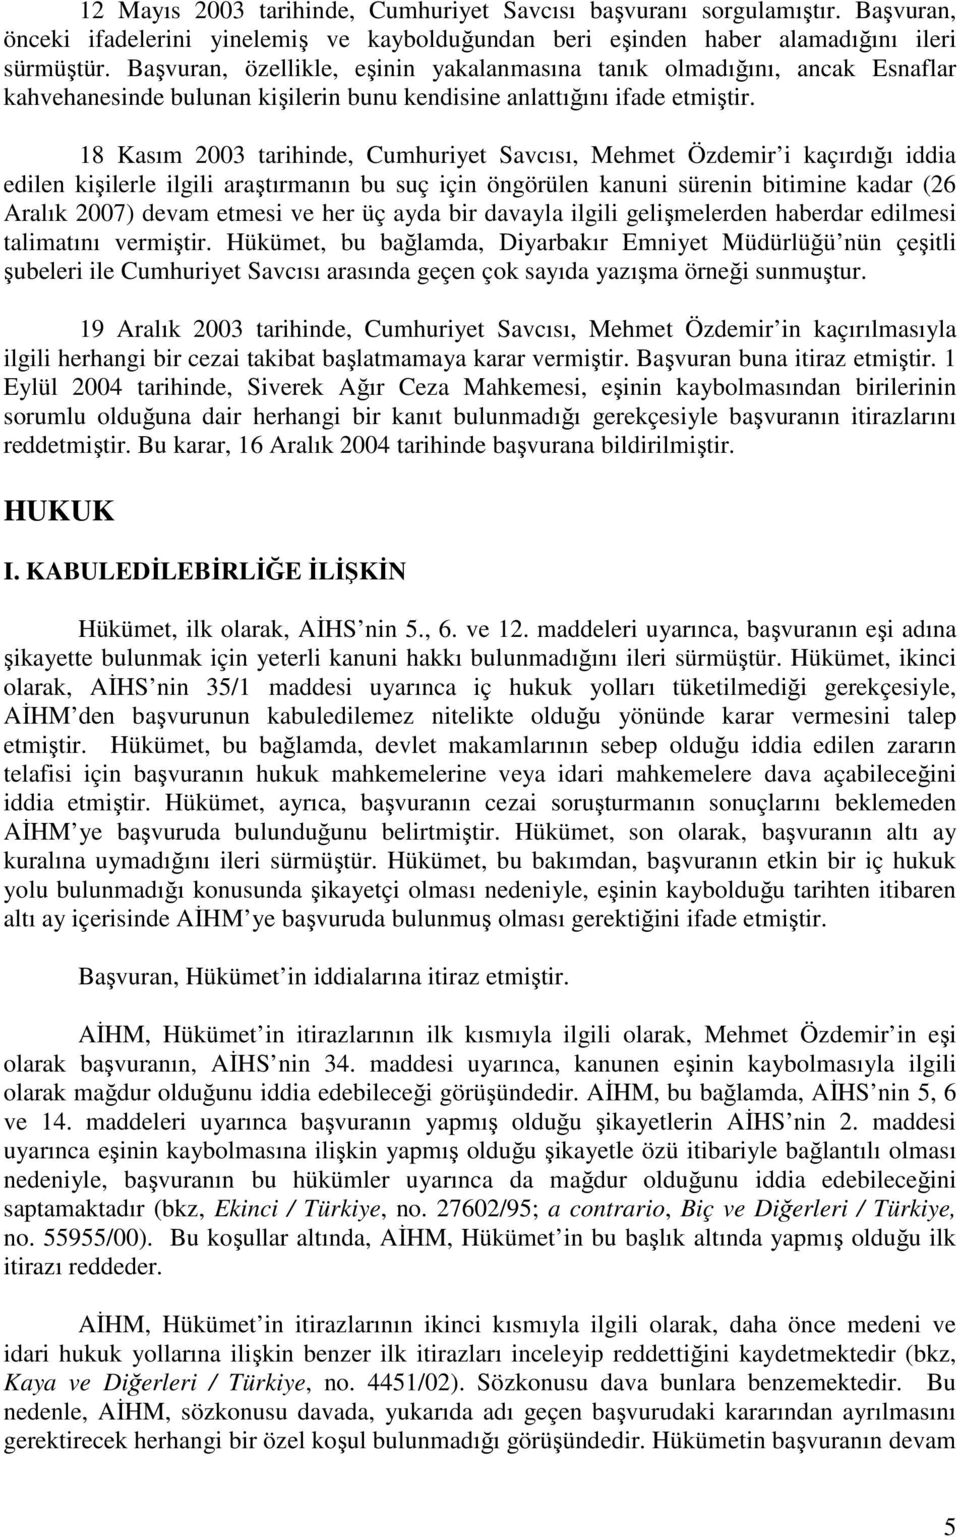 18 Kasım 2003 tarihinde, Cumhuriyet Savcısı, Mehmet Özdemir i kaçırdığı iddia edilen kişilerle ilgili araştırmanın bu suç için öngörülen kanuni sürenin bitimine kadar (26 Aralık 2007) devam etmesi ve